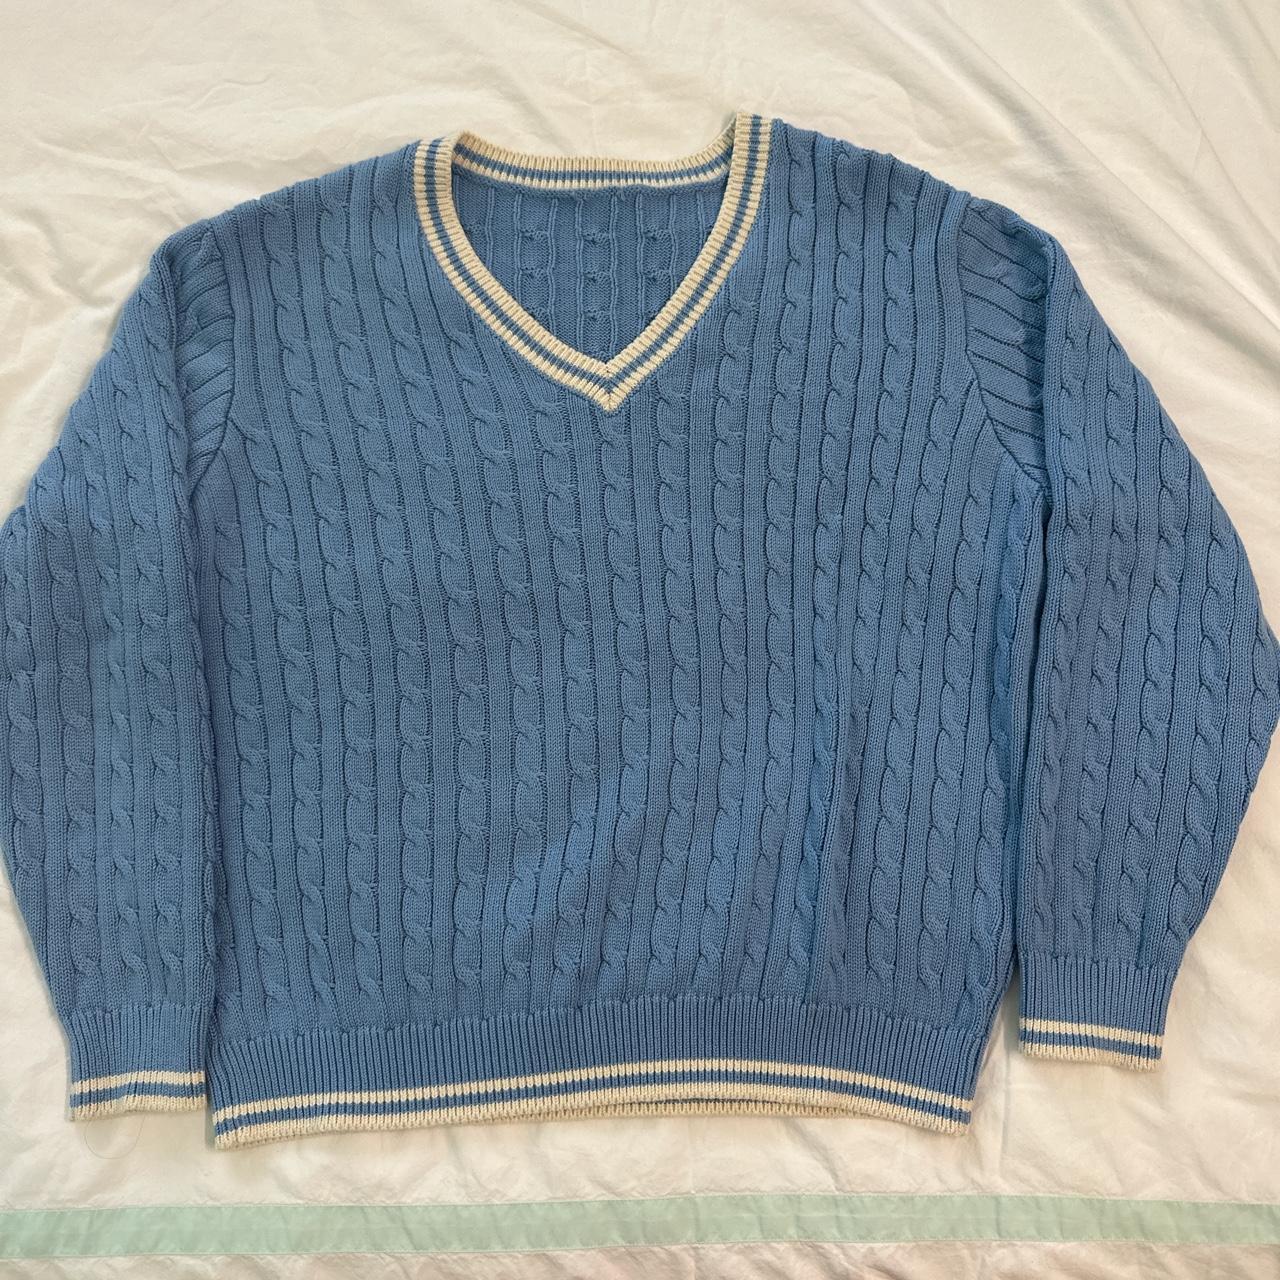 Brandy Melville Cable Knit V Neck Sweater #brandy - Depop